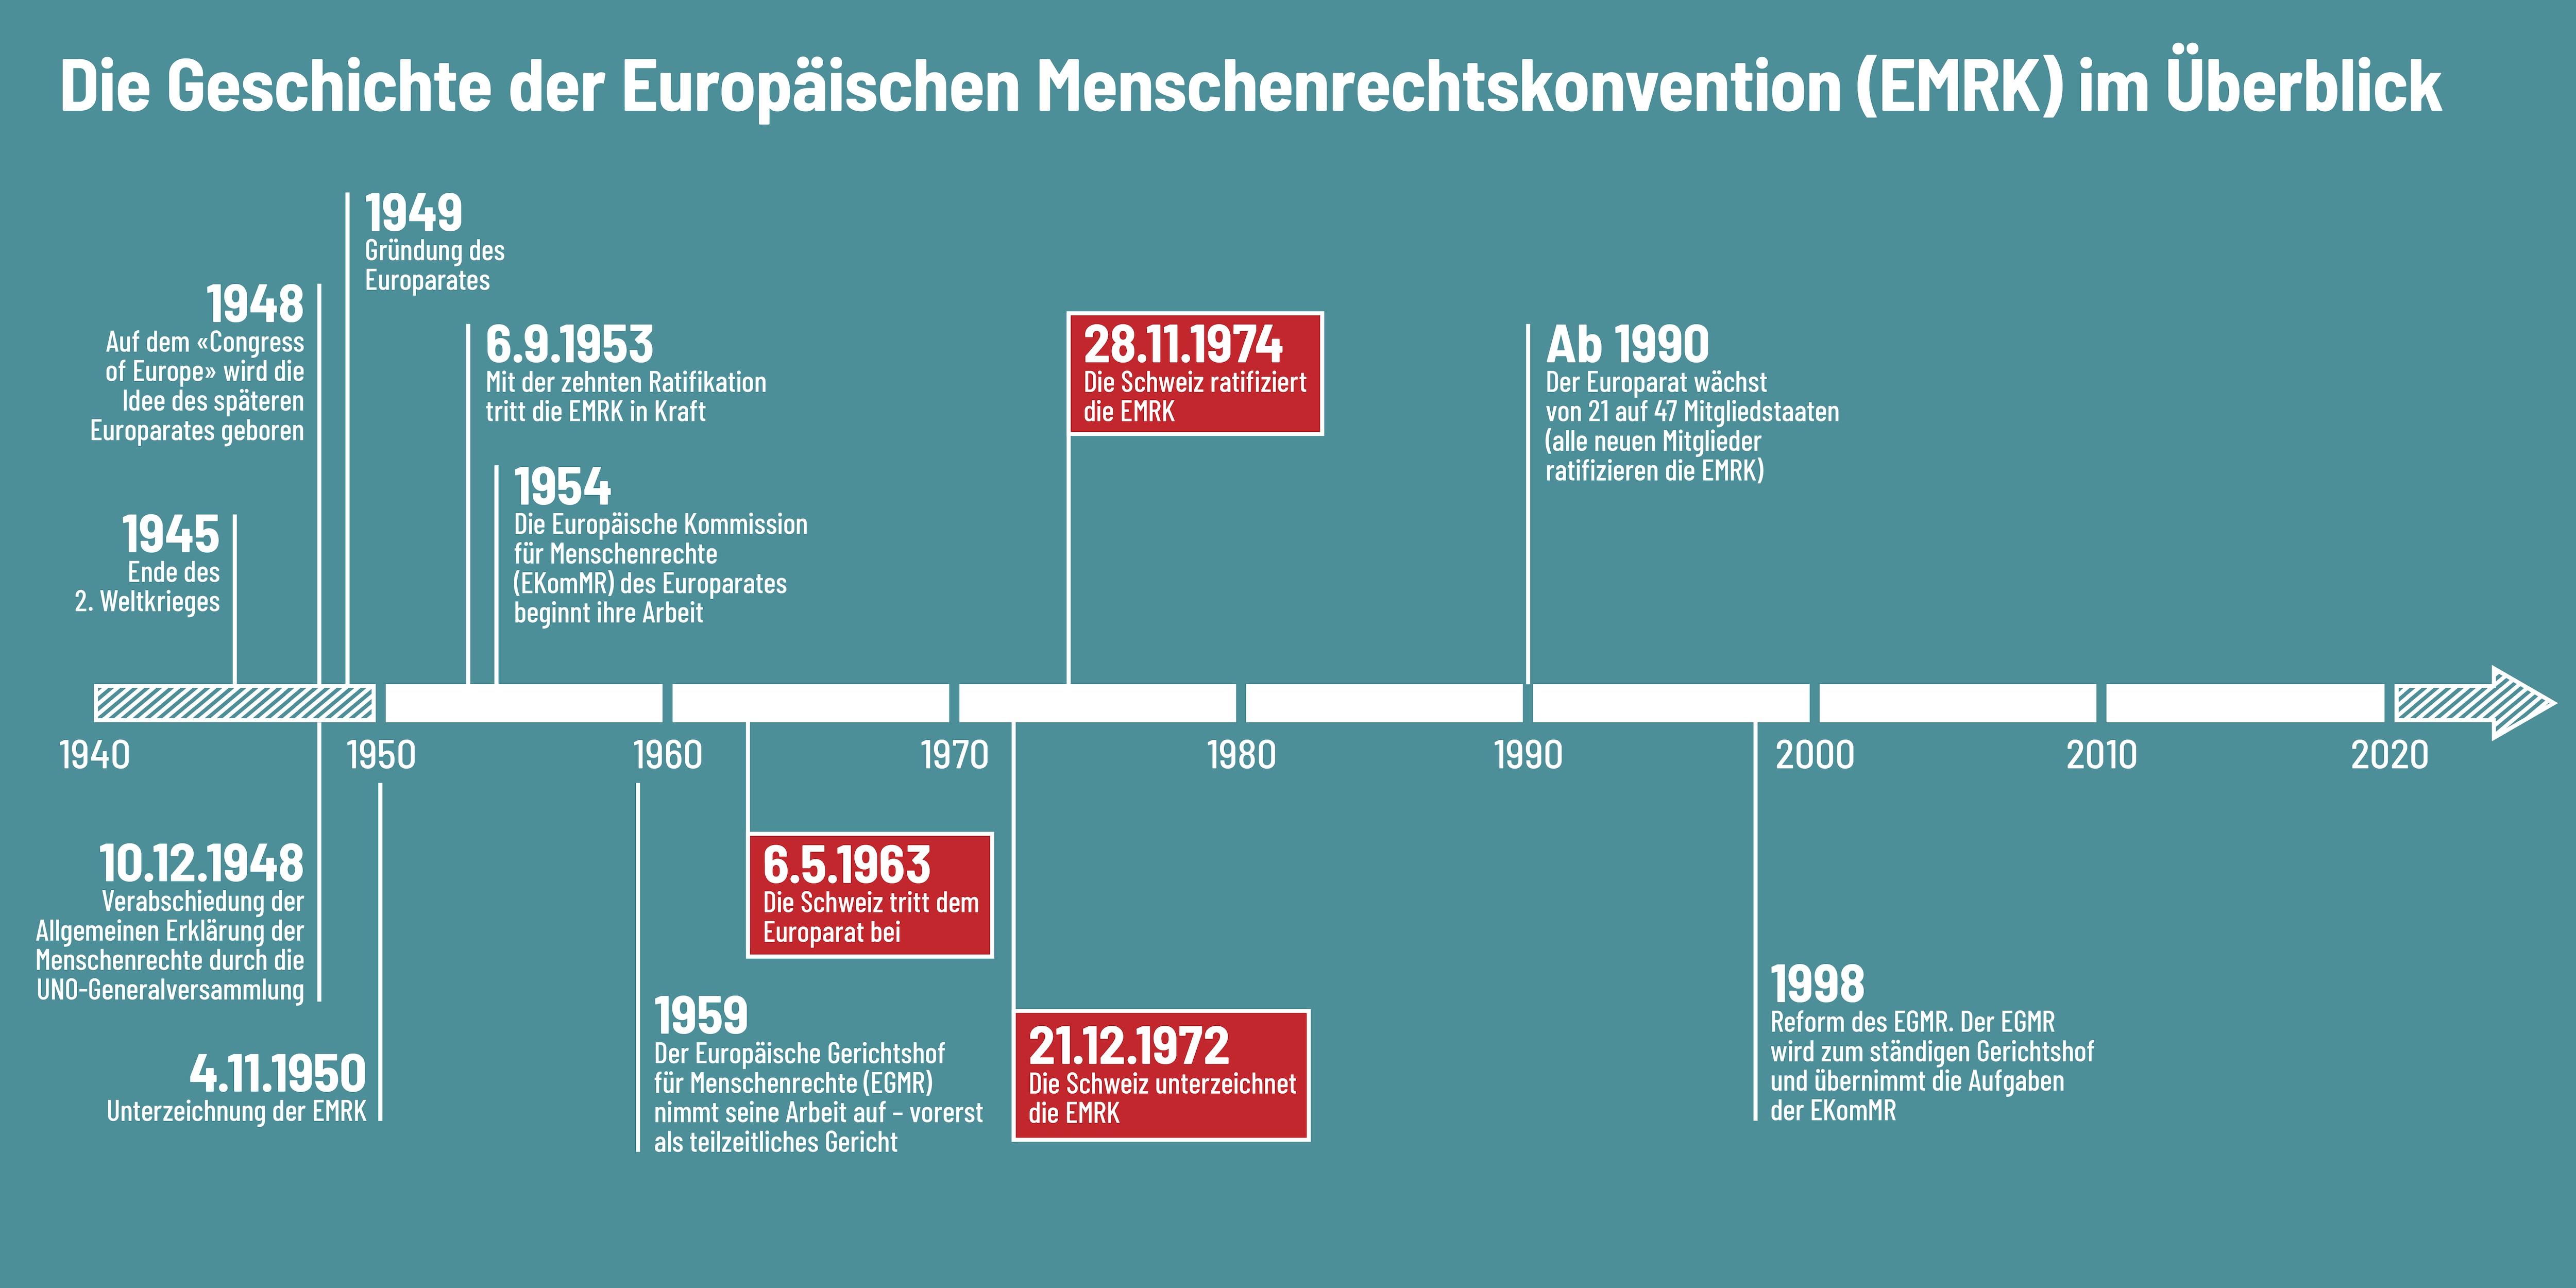 Das Bild zeigt die Geschichte der europäischen Menschenrechtskonvention und hebt hervor, dass die Schweiz 1963 beigetreten ist und die EMRK 1974 ratifiziert hat. 